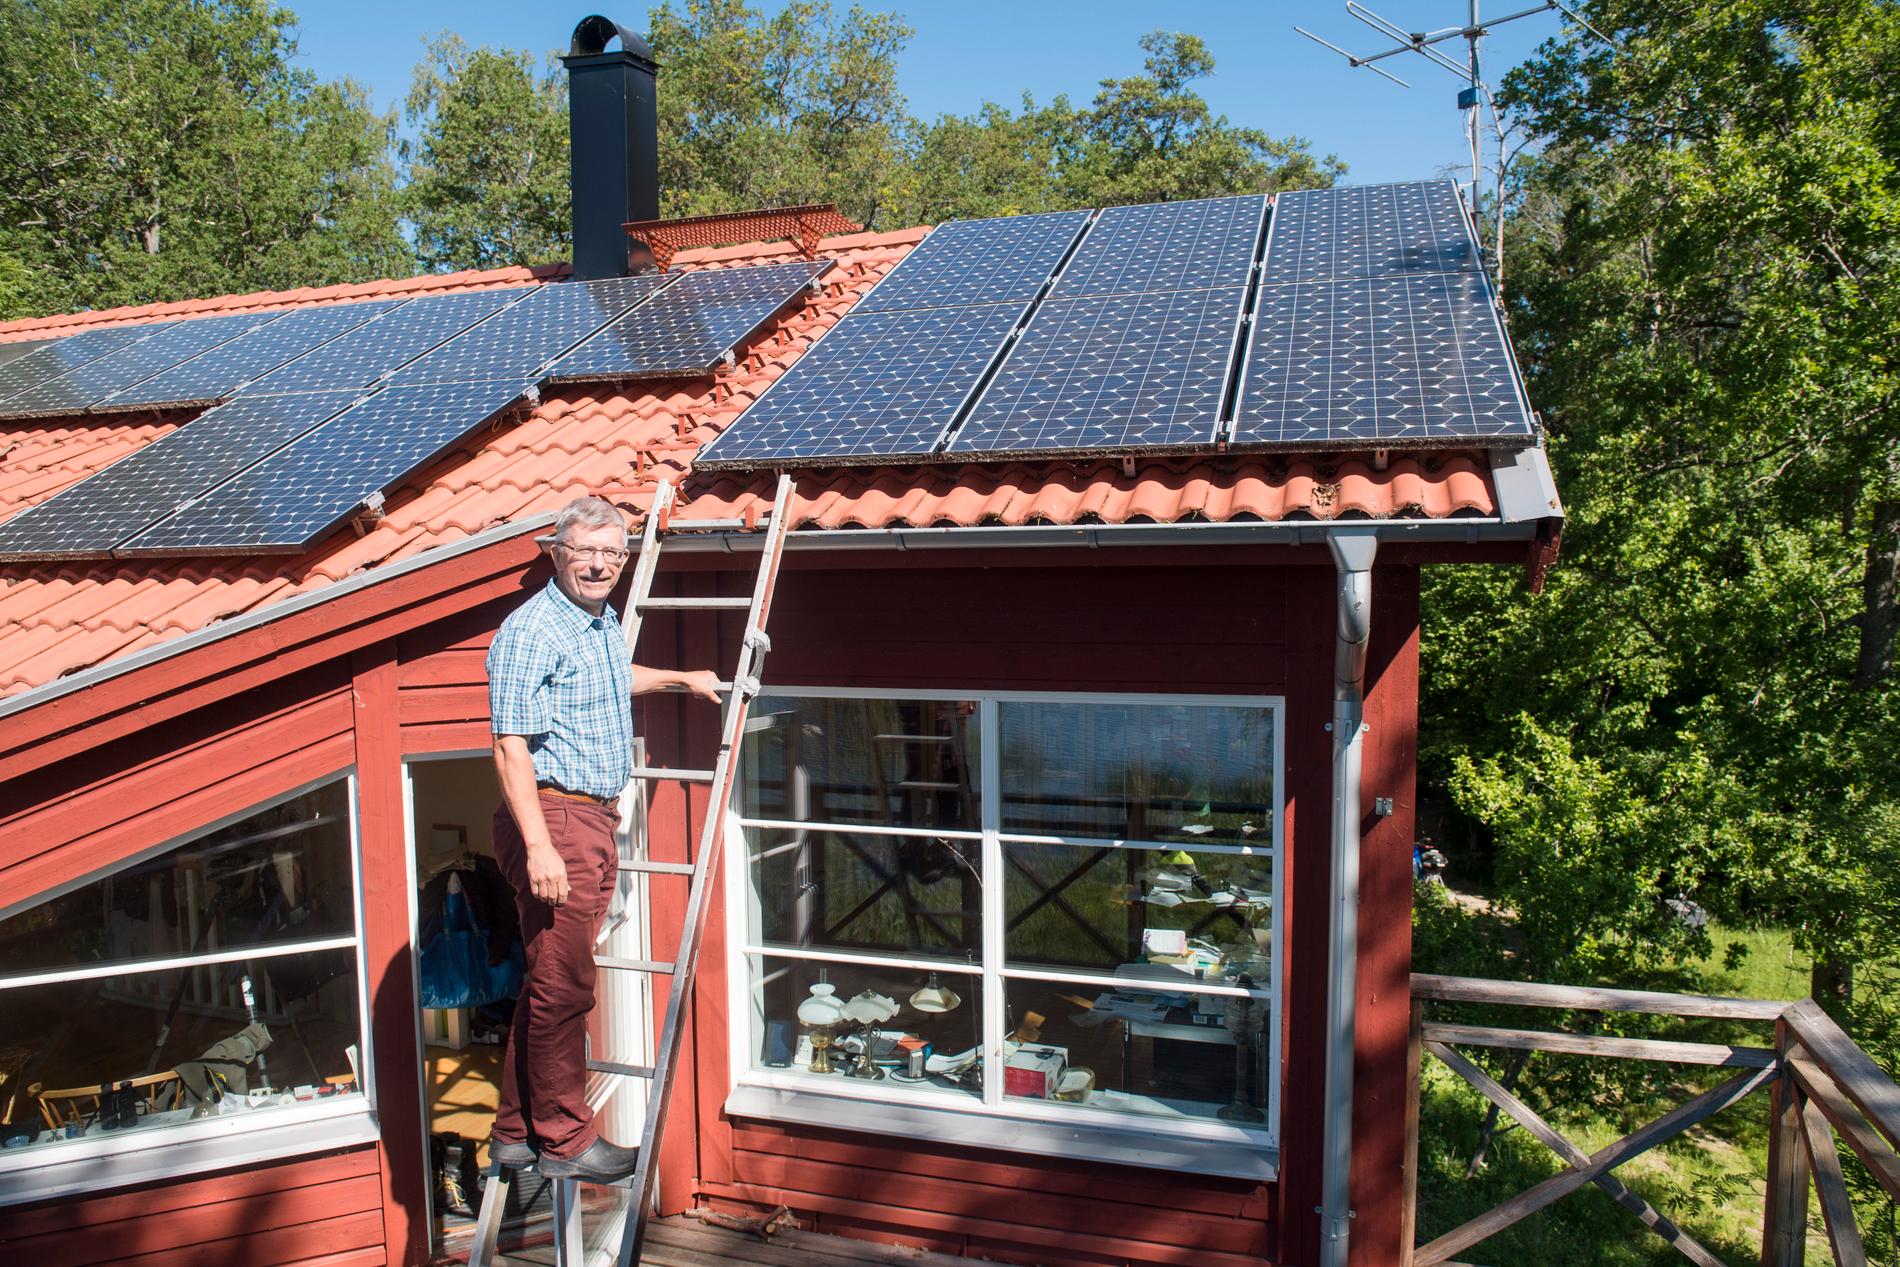 Bengt Stridh vid sitt hus i Västerås med solceller på taket. Bengt är en av pionjärerna inom egenproducerad el via solceller.